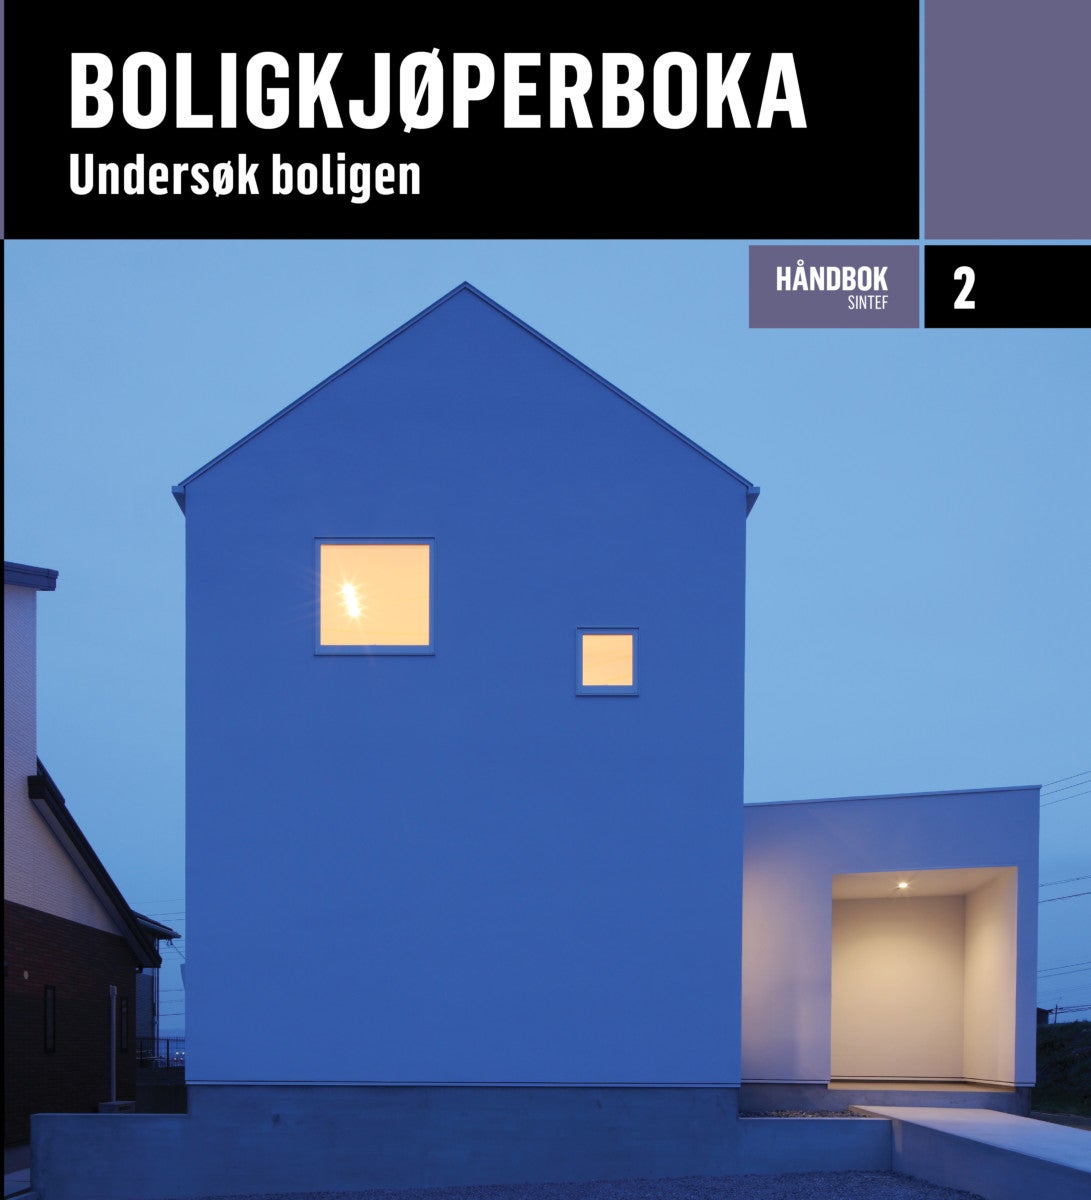 Bilde av Boligkjøperboka Av Trond Bøhlerengen, Knut Ivar Edvardsen, Tuva Engdal, Johan Gåsbak, Solveig Øyri